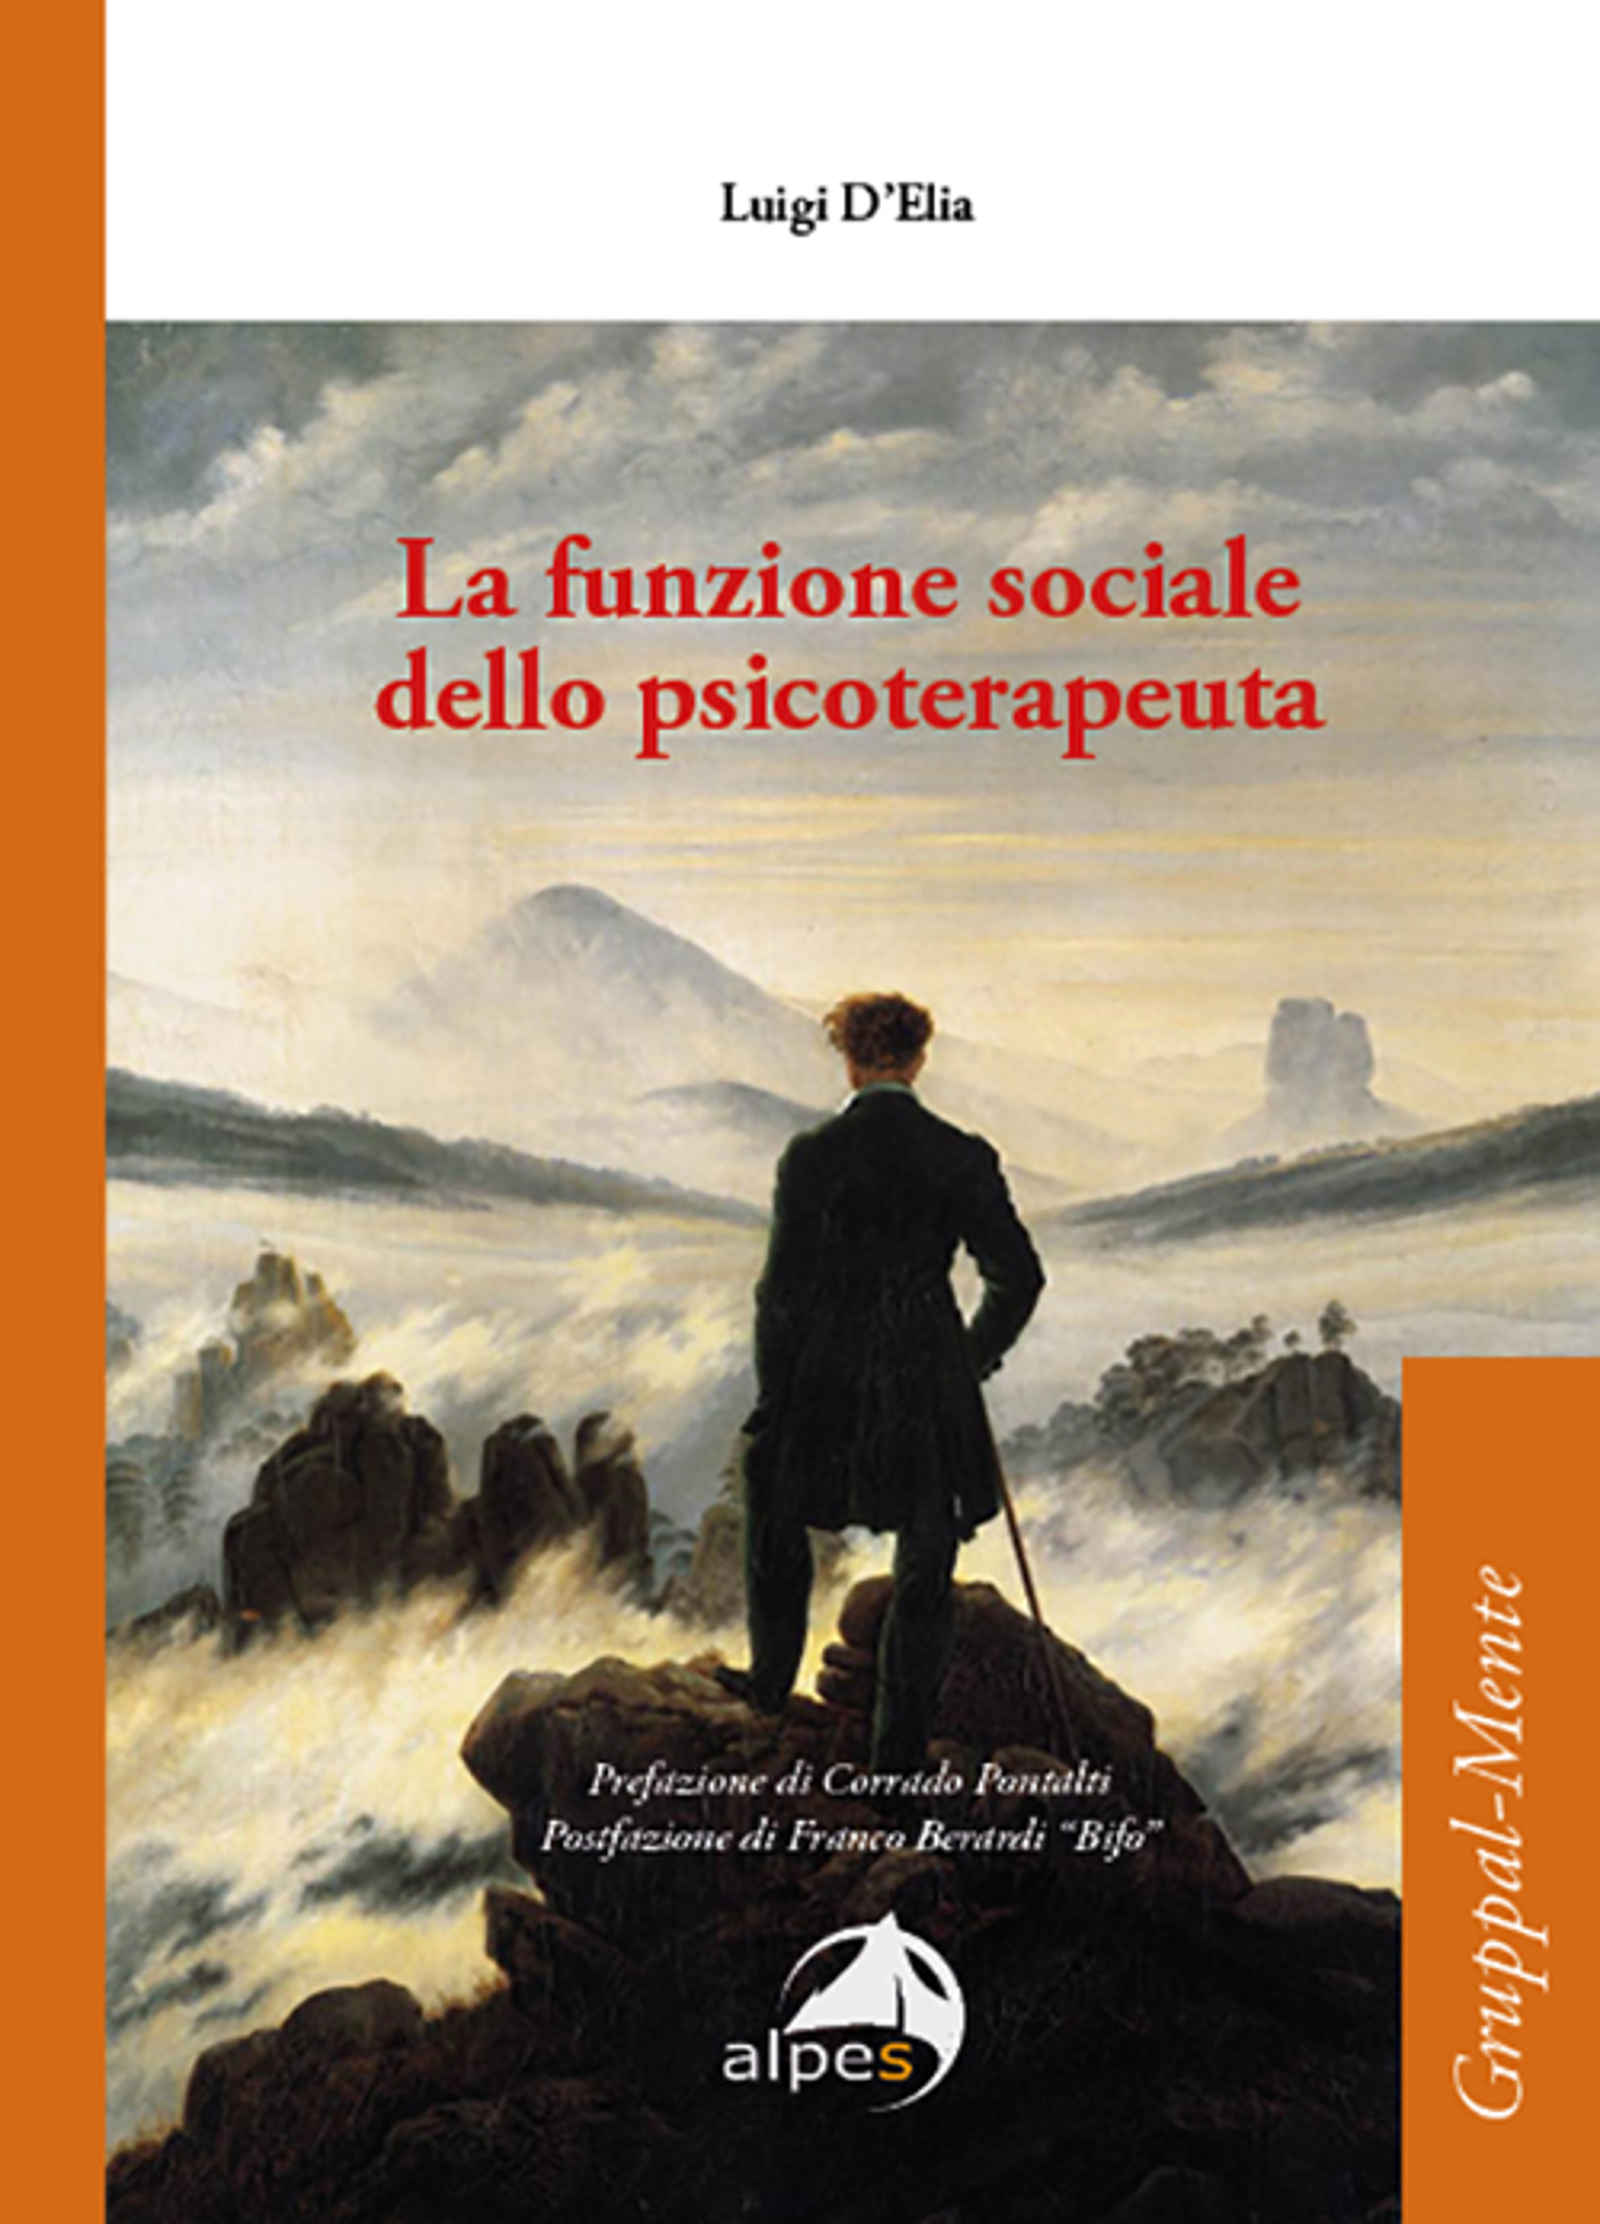 La funzione sociale dello psicoterapeuta (2020) di Luigi D’Elia – Recensione